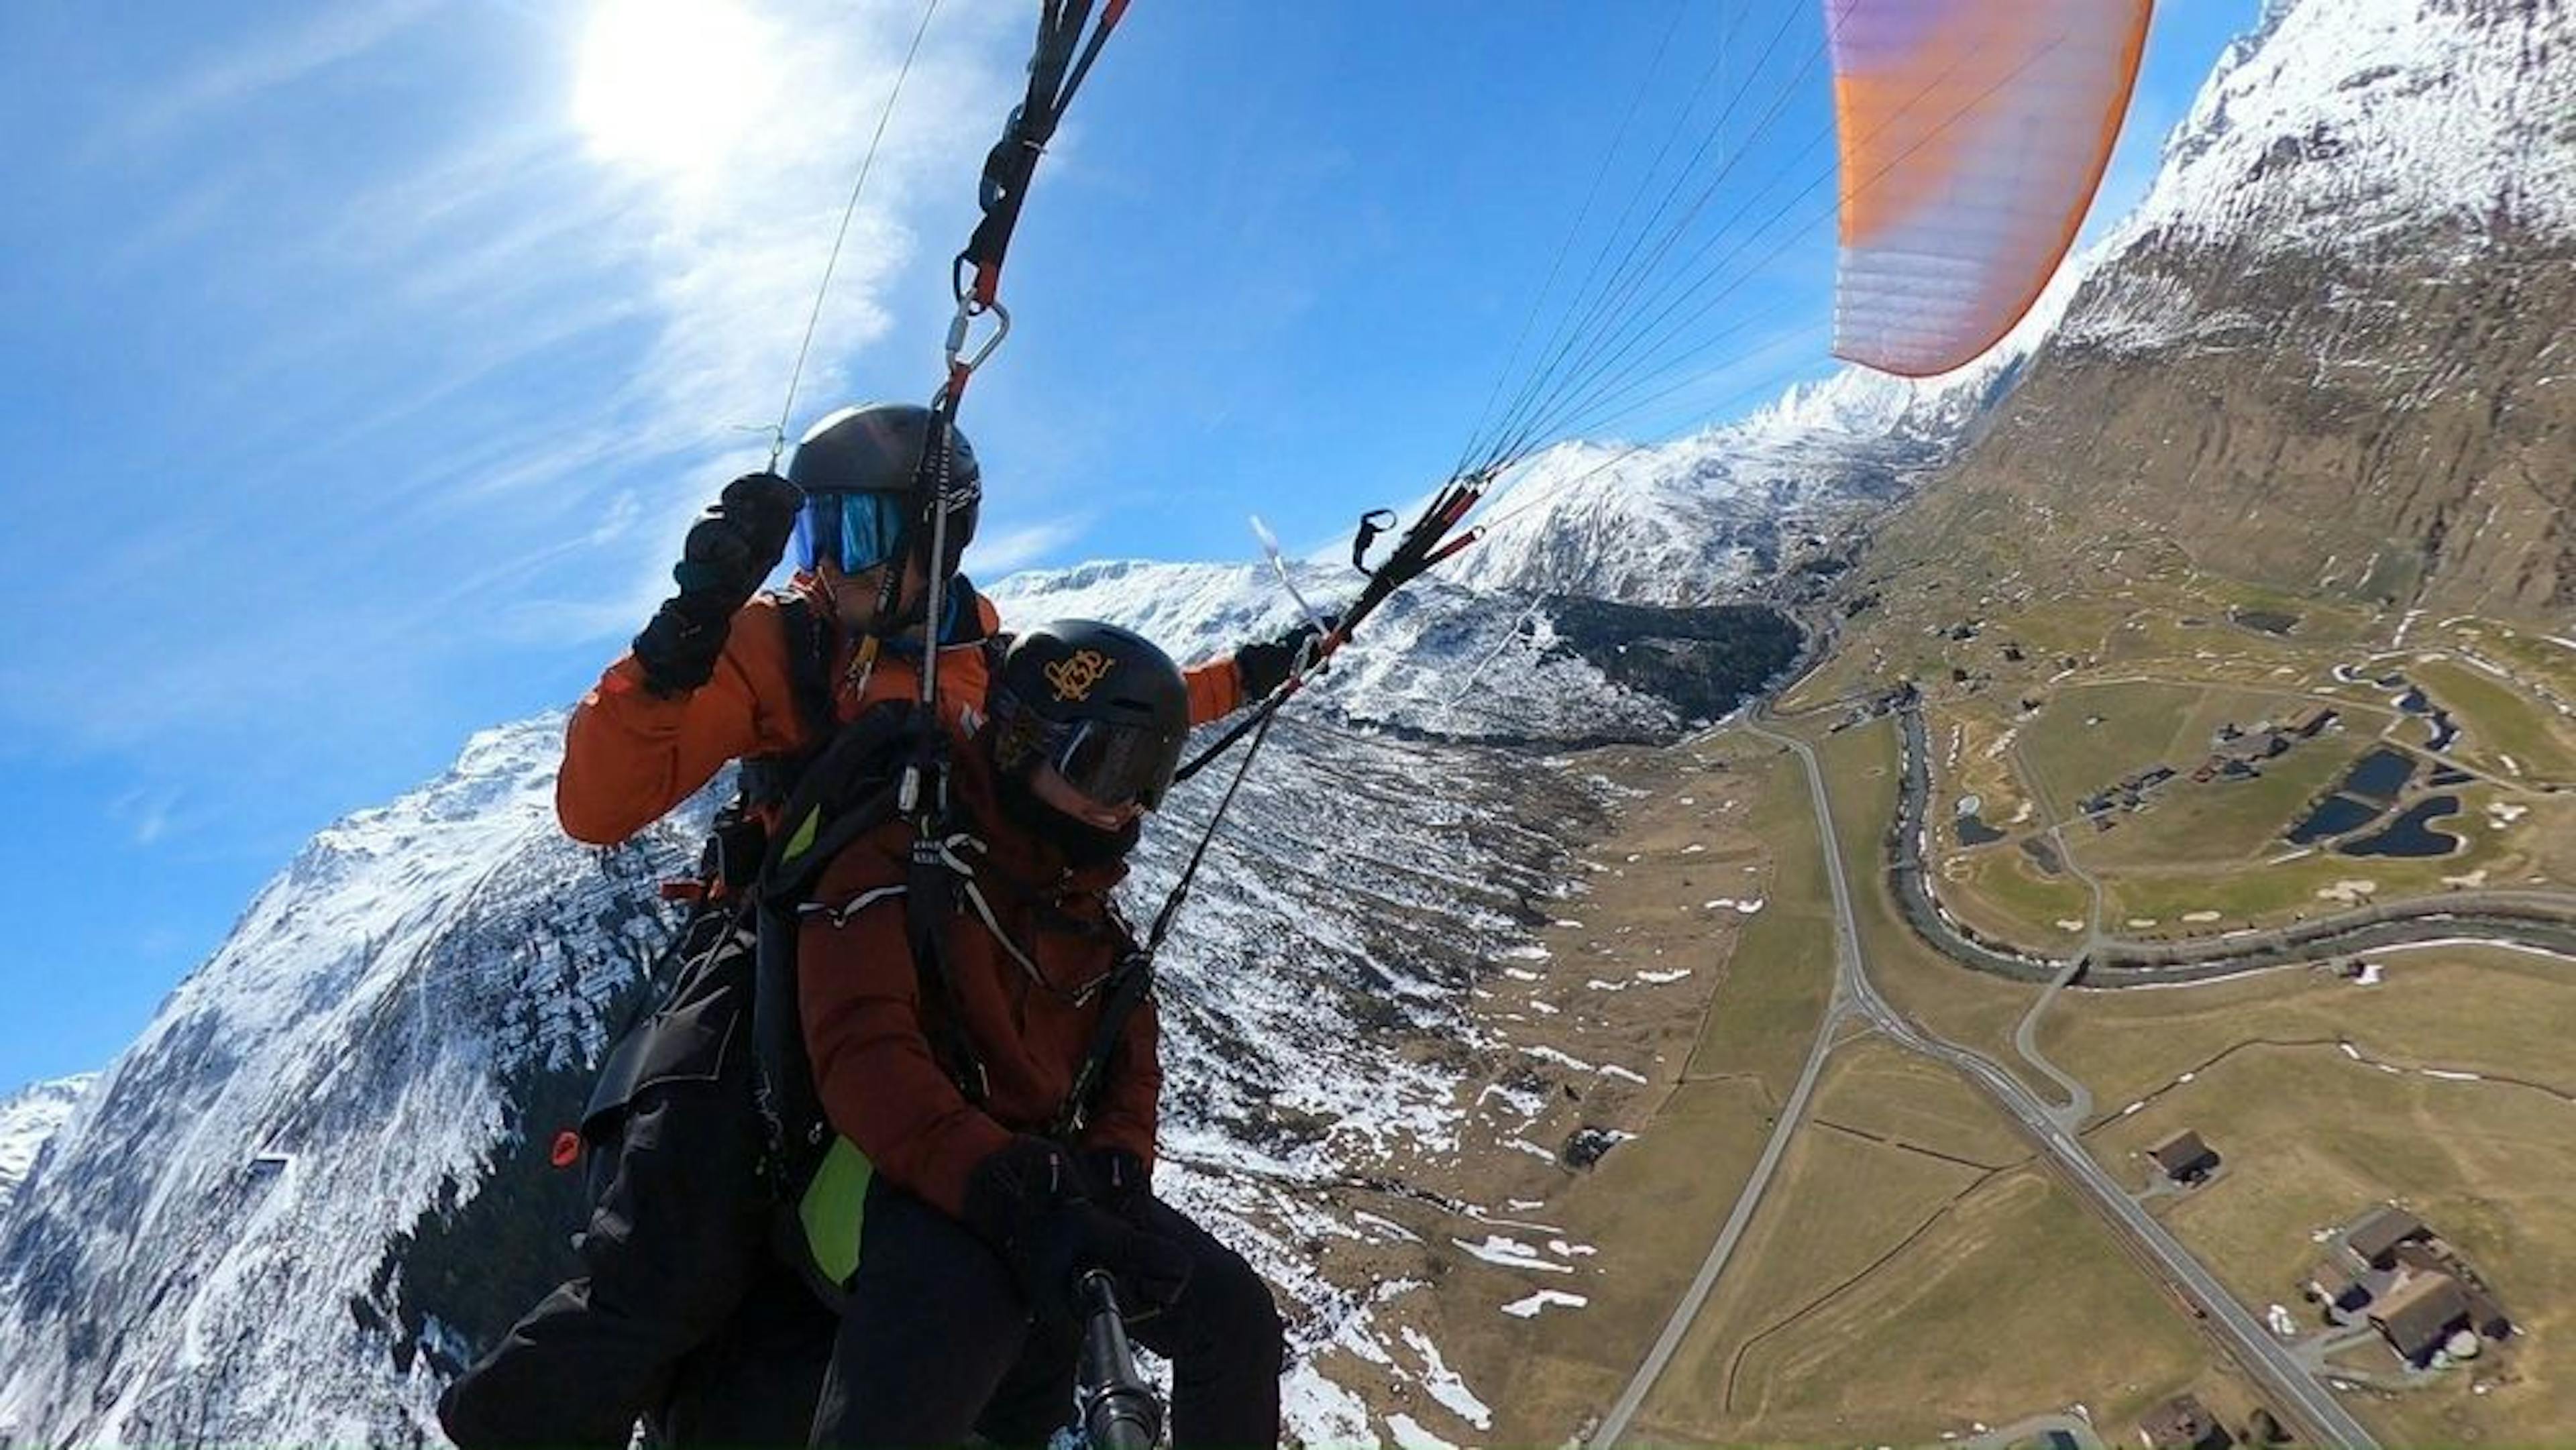 Andermatt paragliding in winter